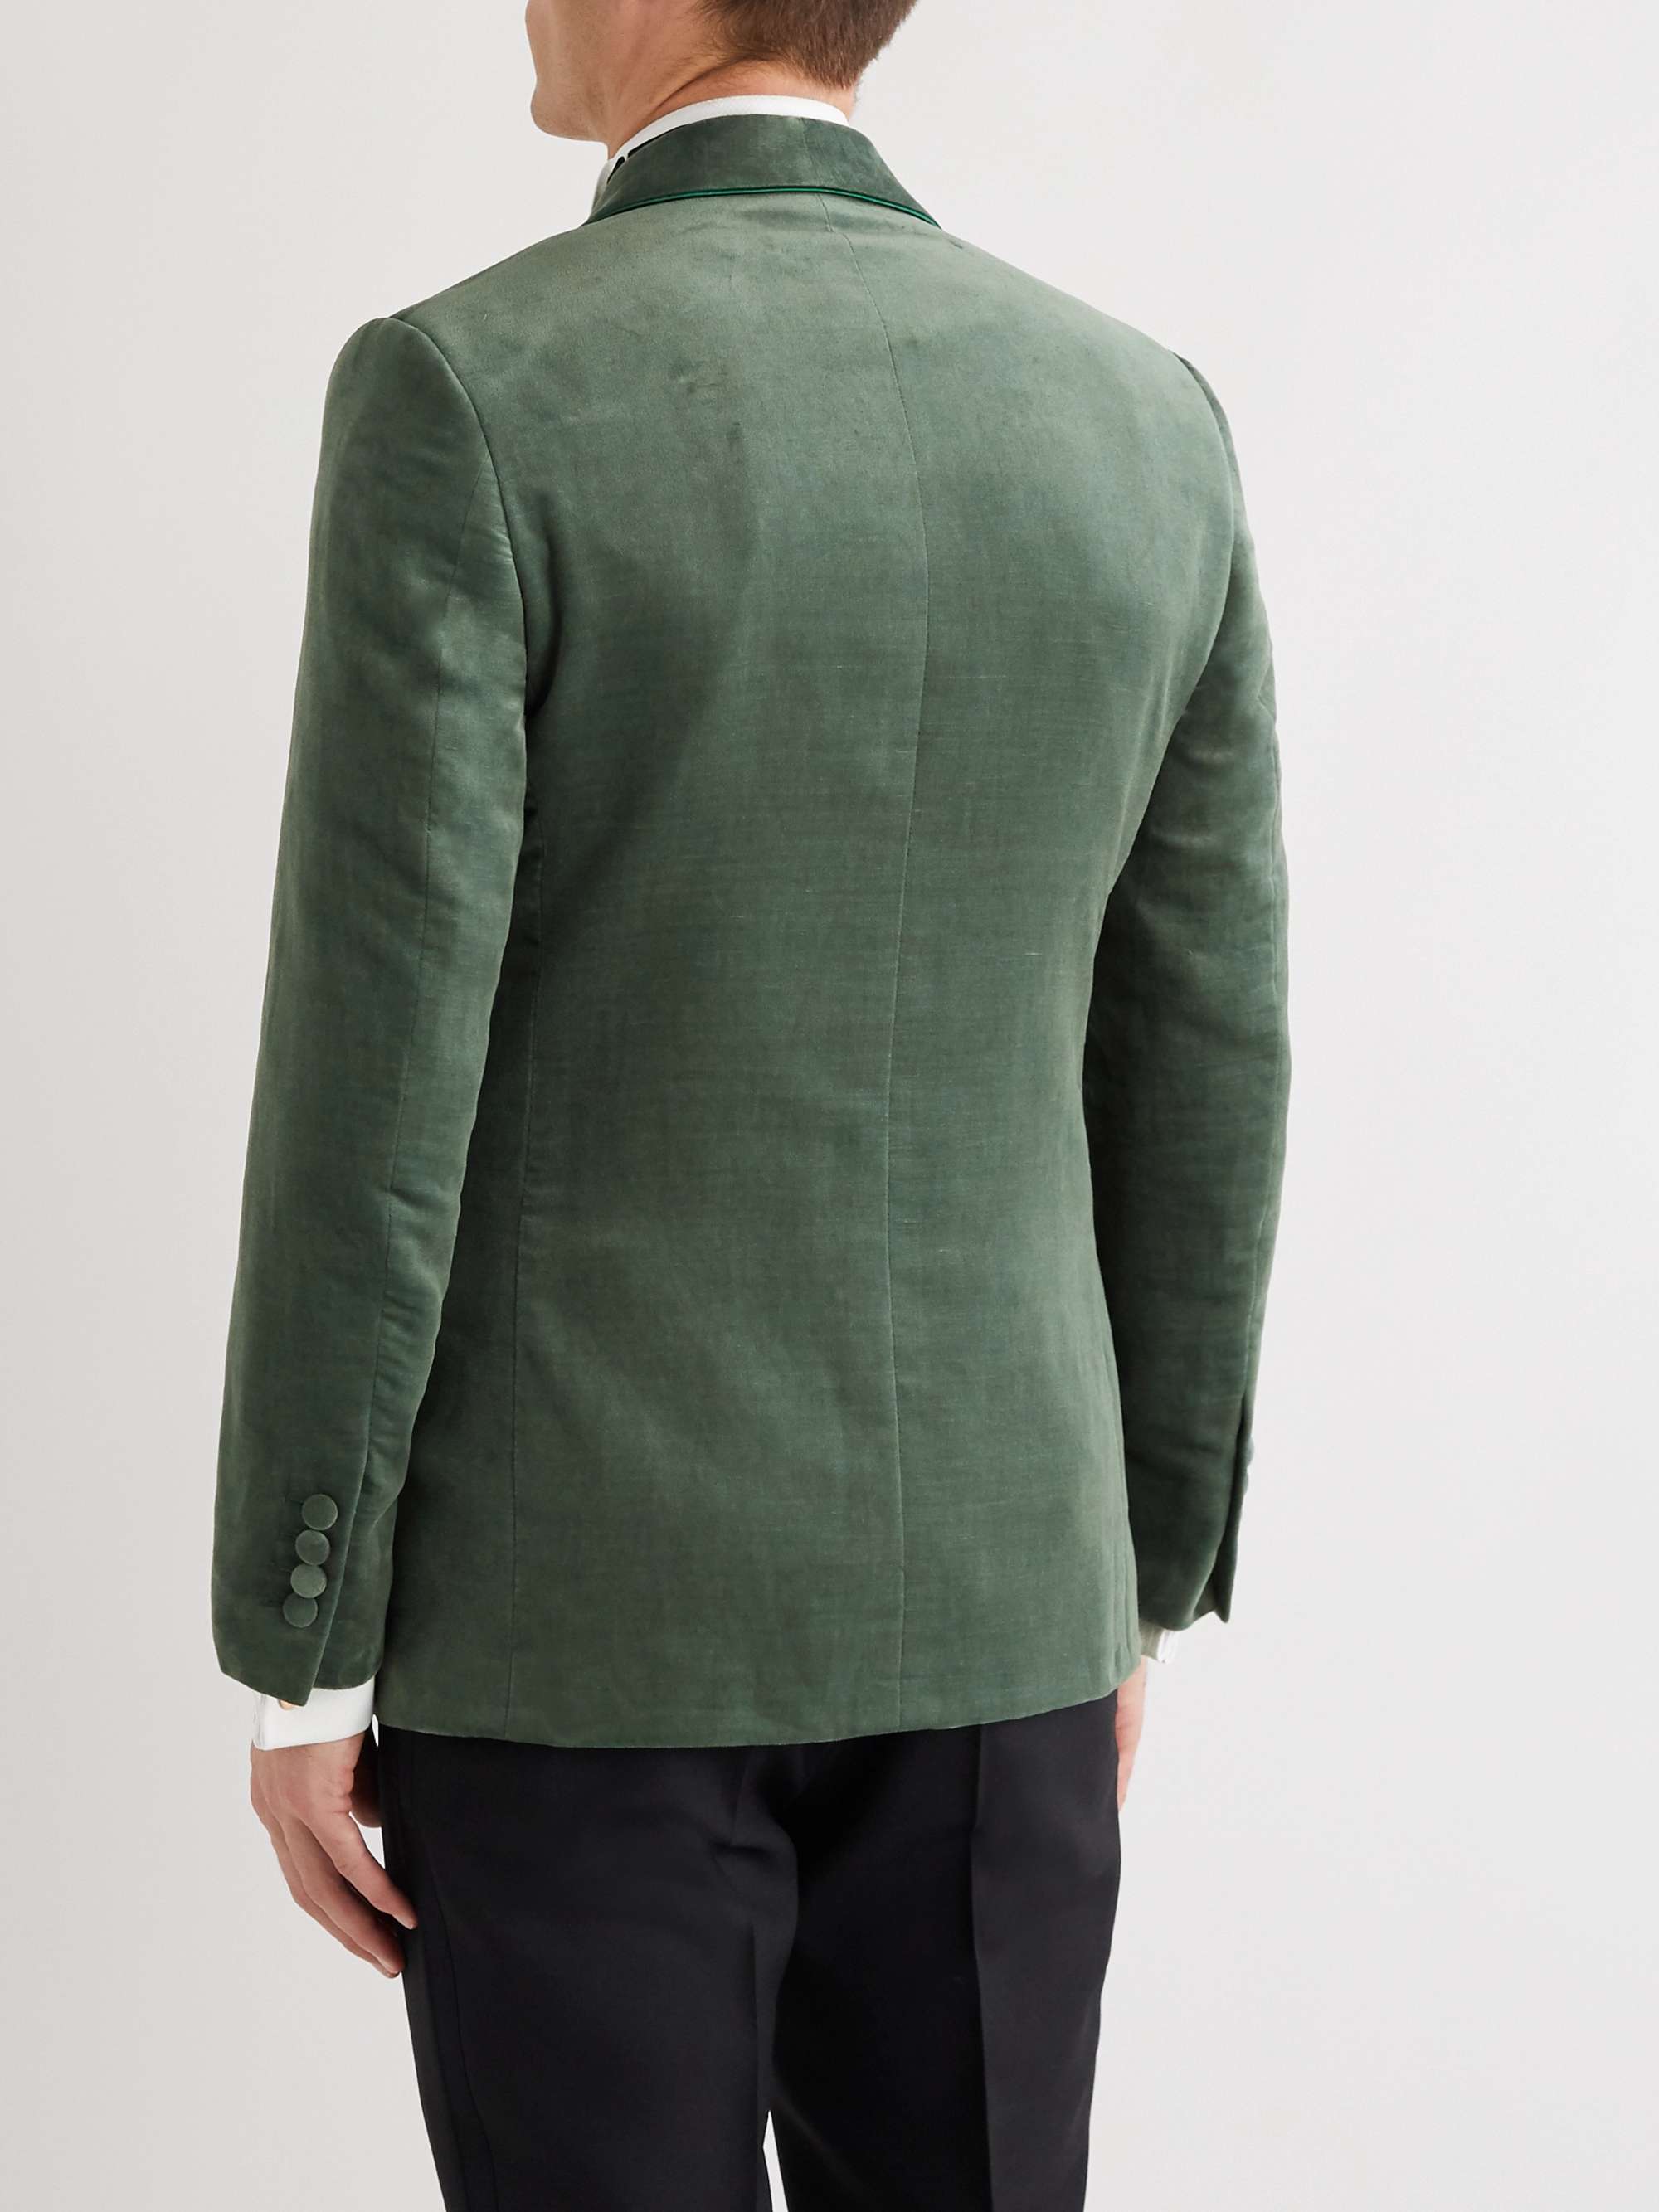 KINGSMAN Slim-Fit Cotton and Linen-Blend Velvet Tuxedo Jacket